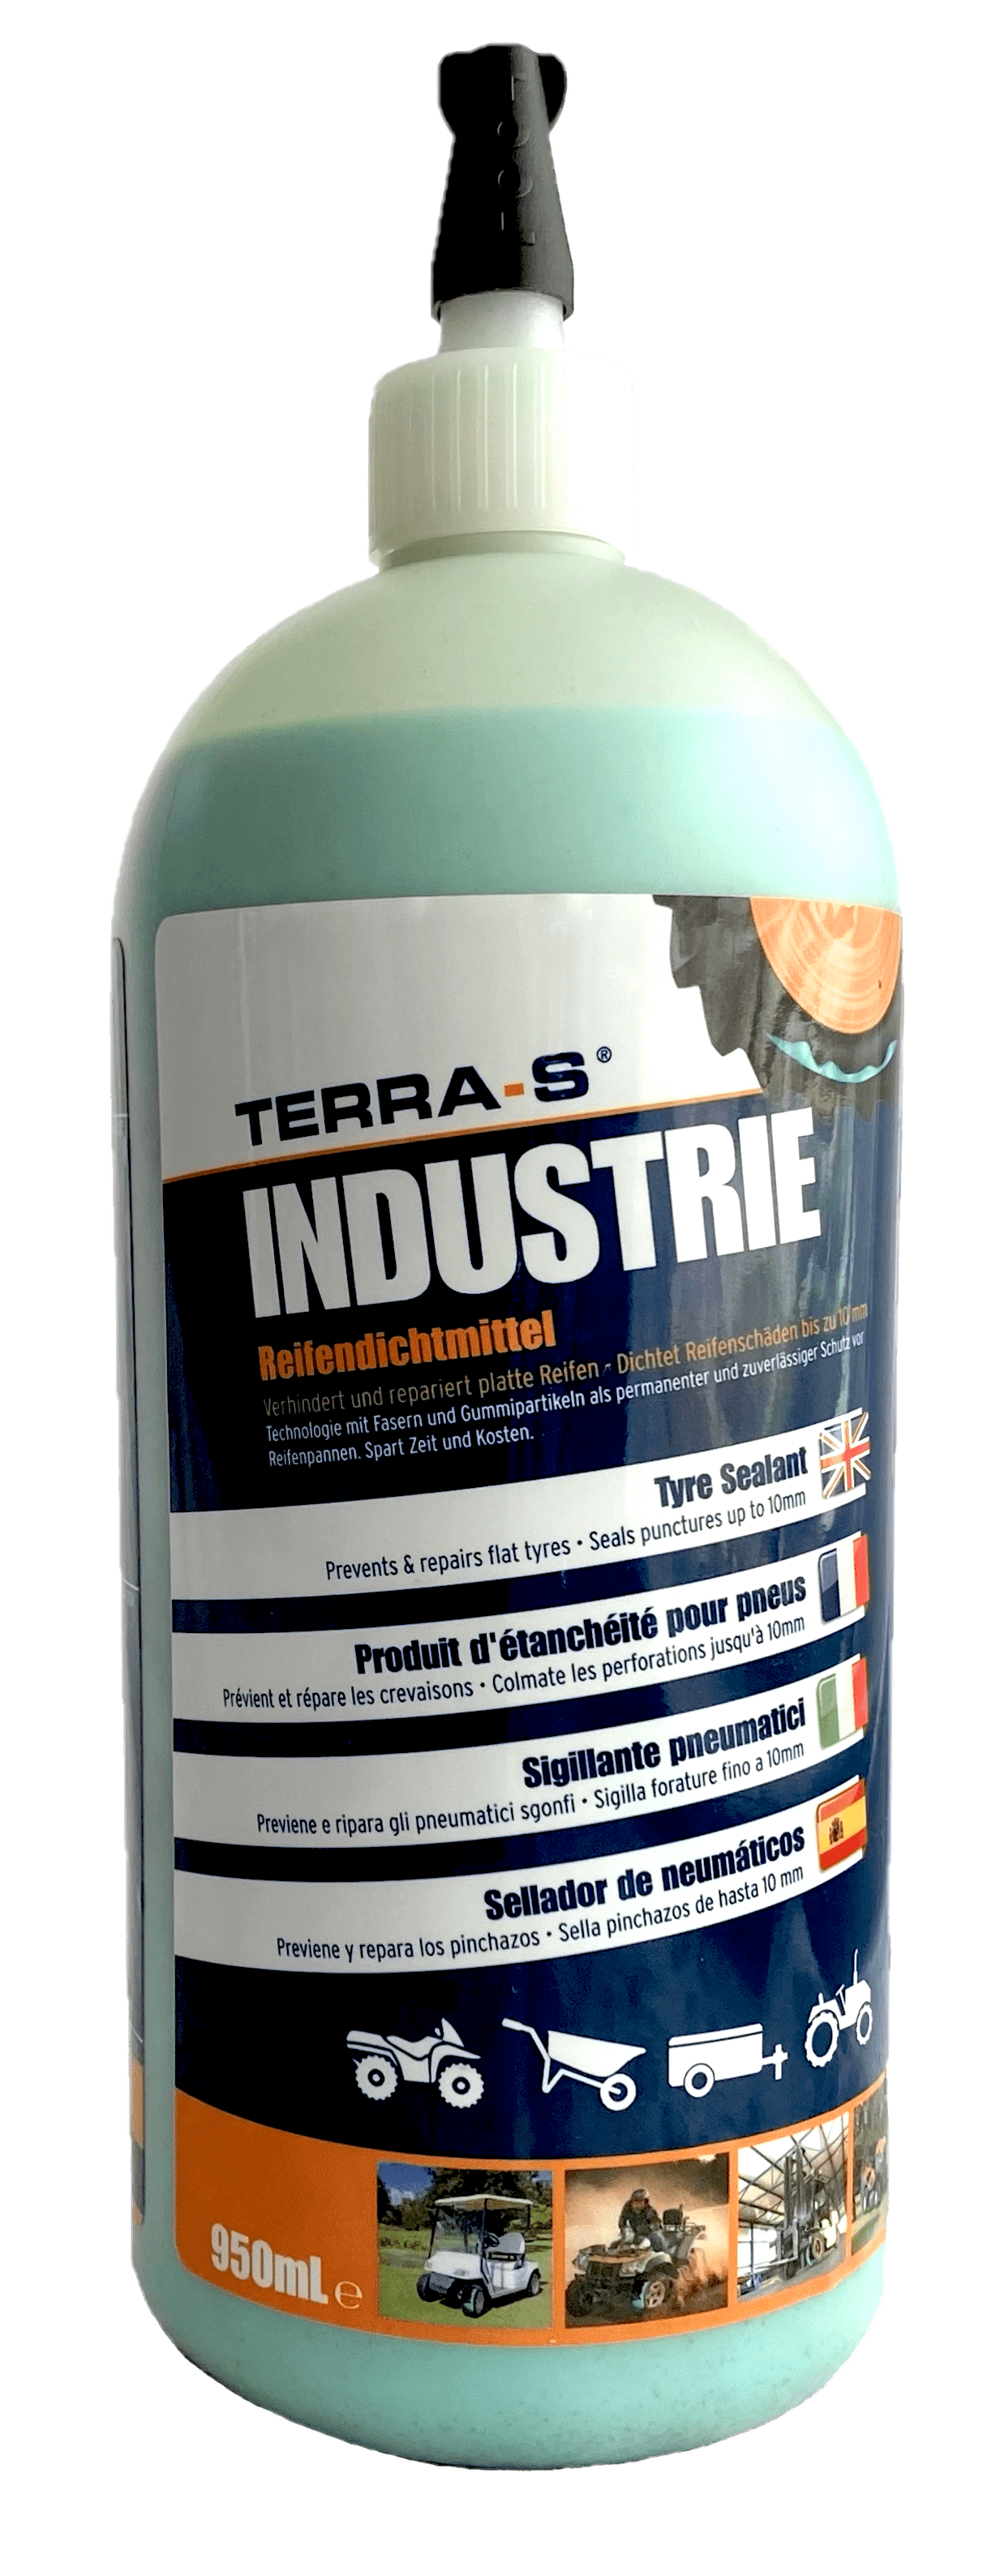 Terra S Reifendichtmittel für Landmaschinen Fahrrädern INDUSTRIE 950ml